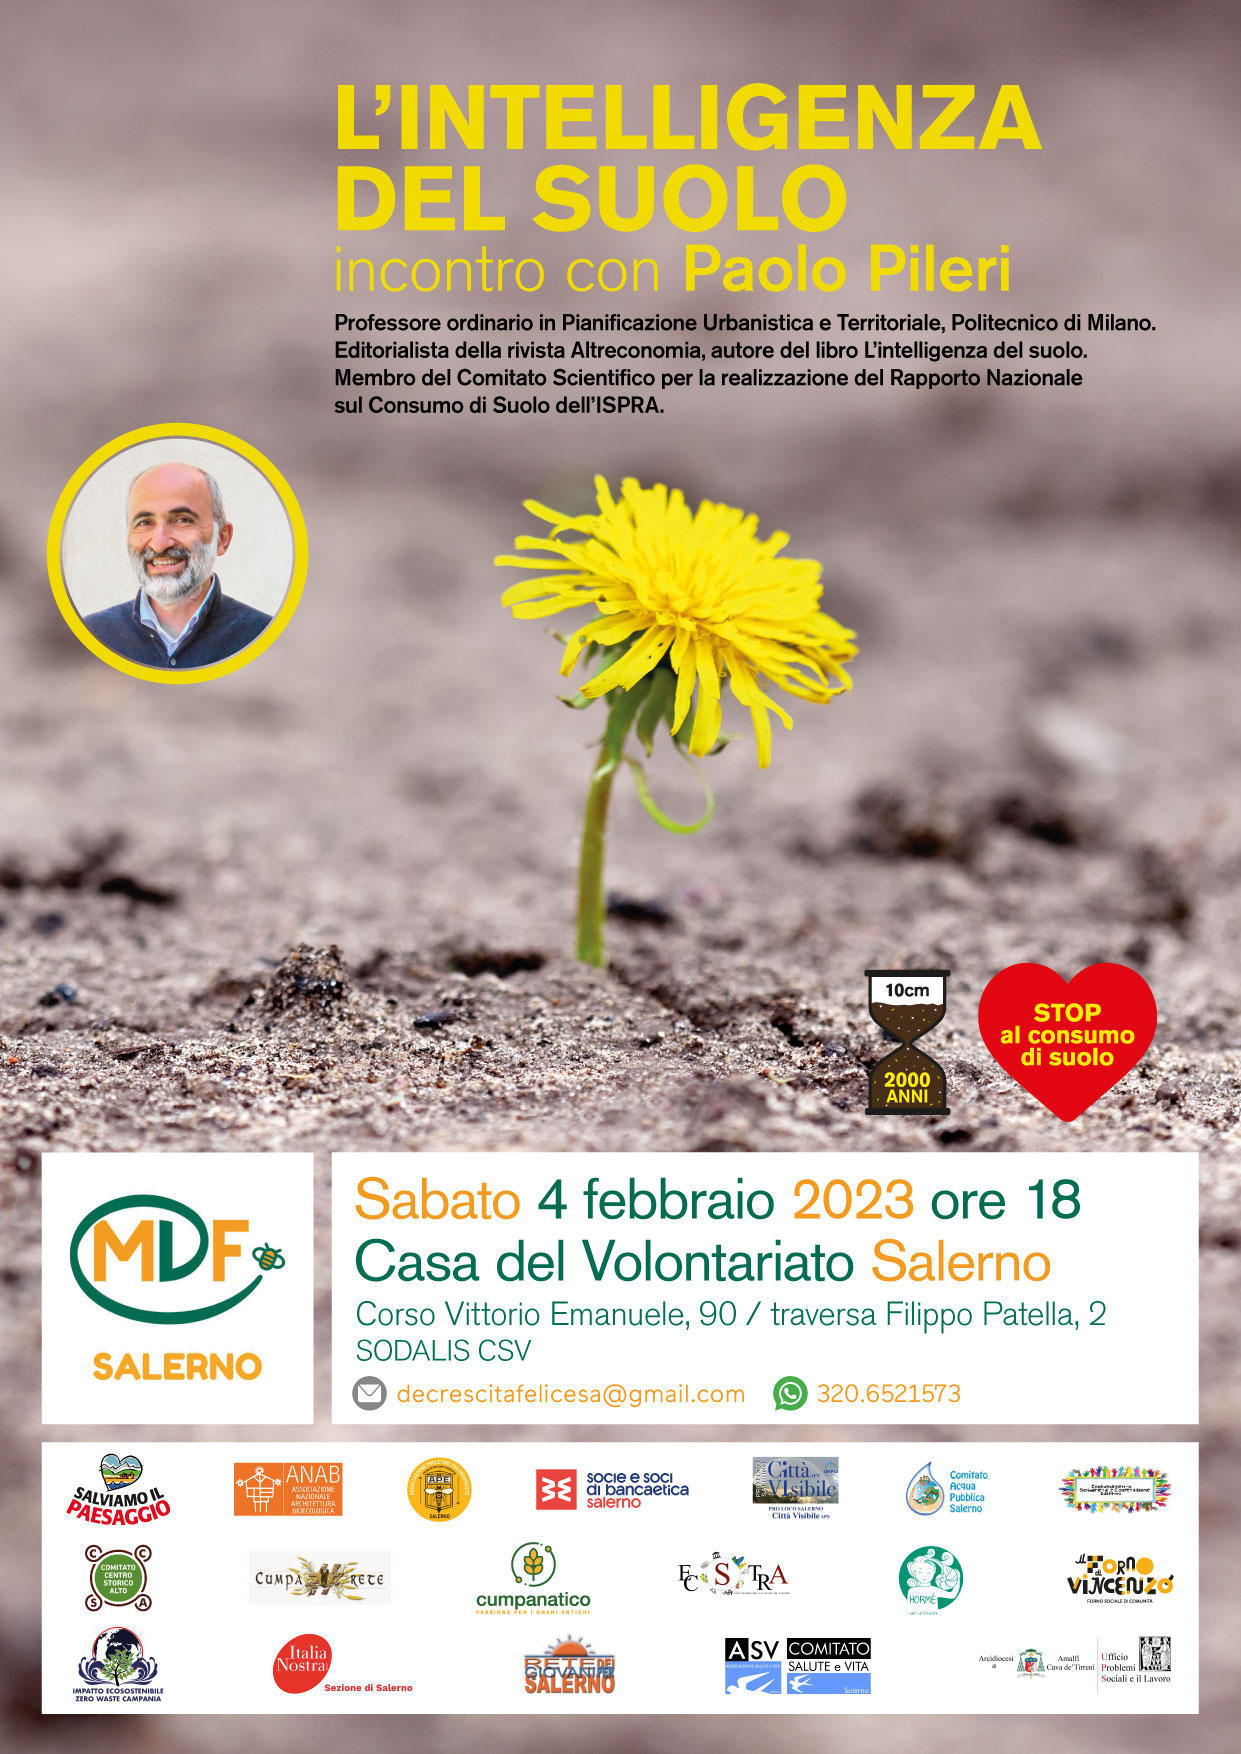 Salerno: Movimento Decrescita Felice, “L’intelligenza del suolo” incontro pubblico con Paolo Pileri 